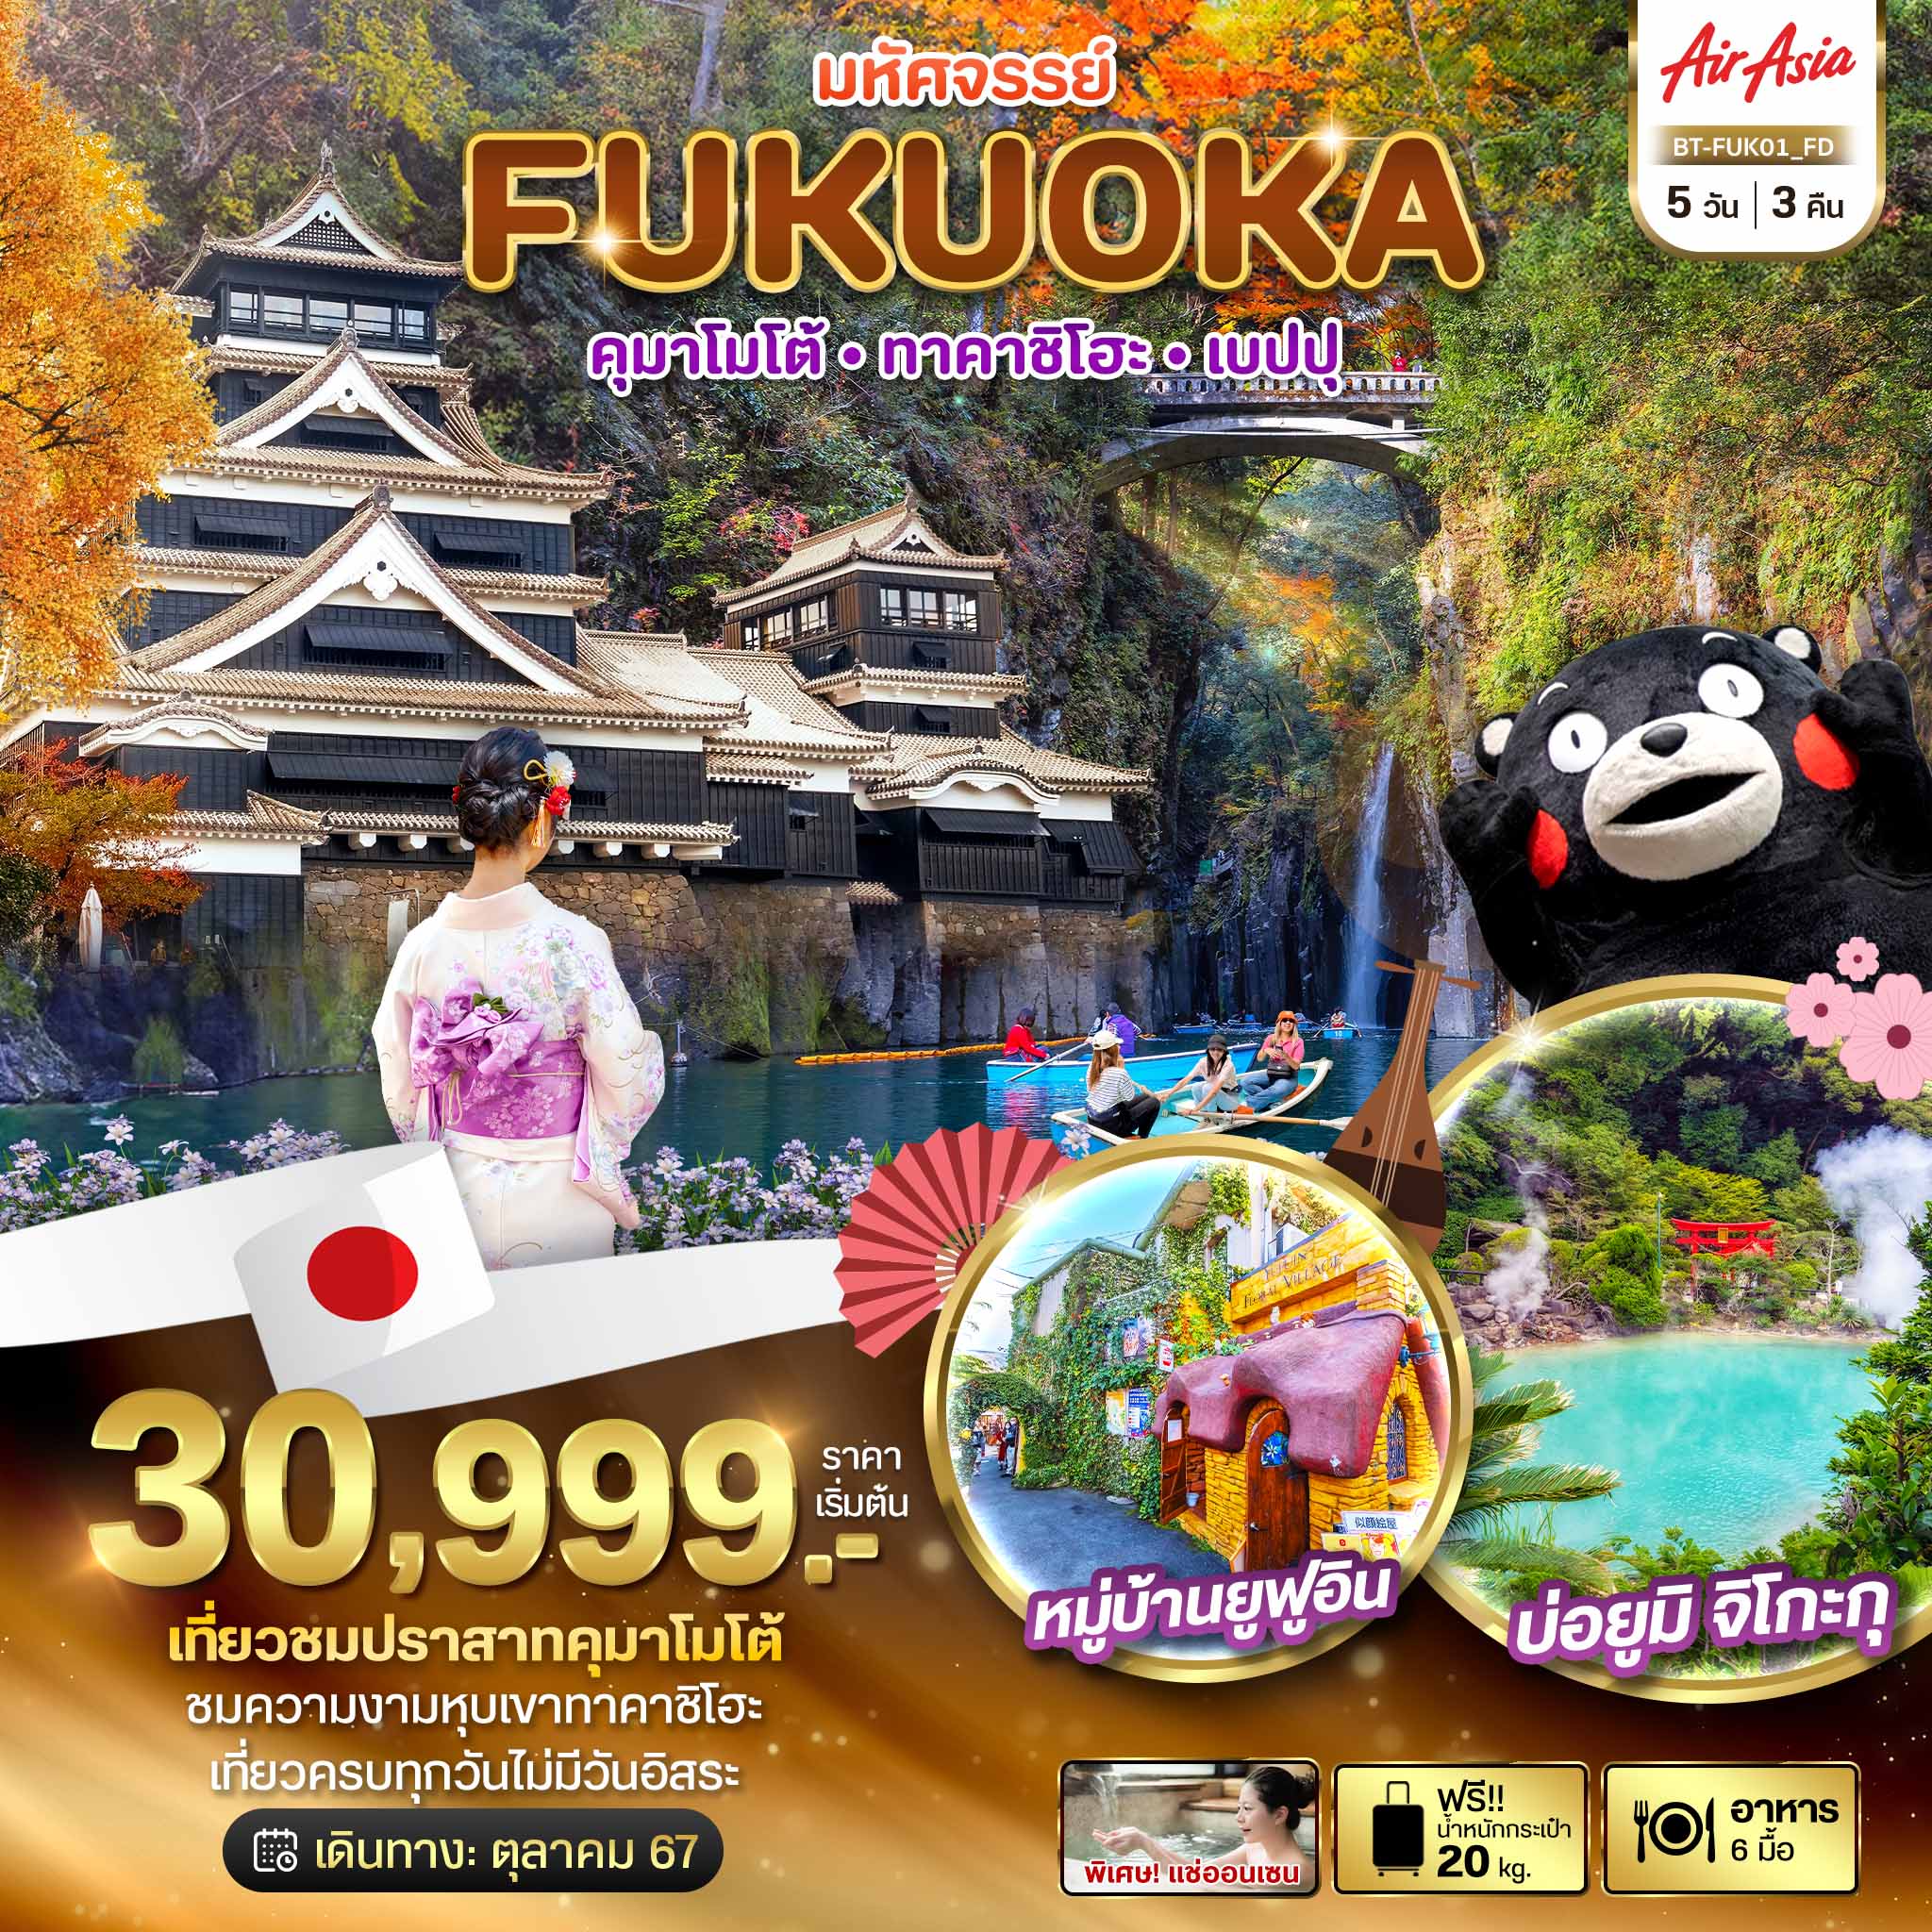 ทัวร์ญี่ปุ่น มหัศจรรย์ FUKUOKA คุมาโมโต้ ทาคาชิโฮะ เบปปุ 5วัน 3คืน (FD)